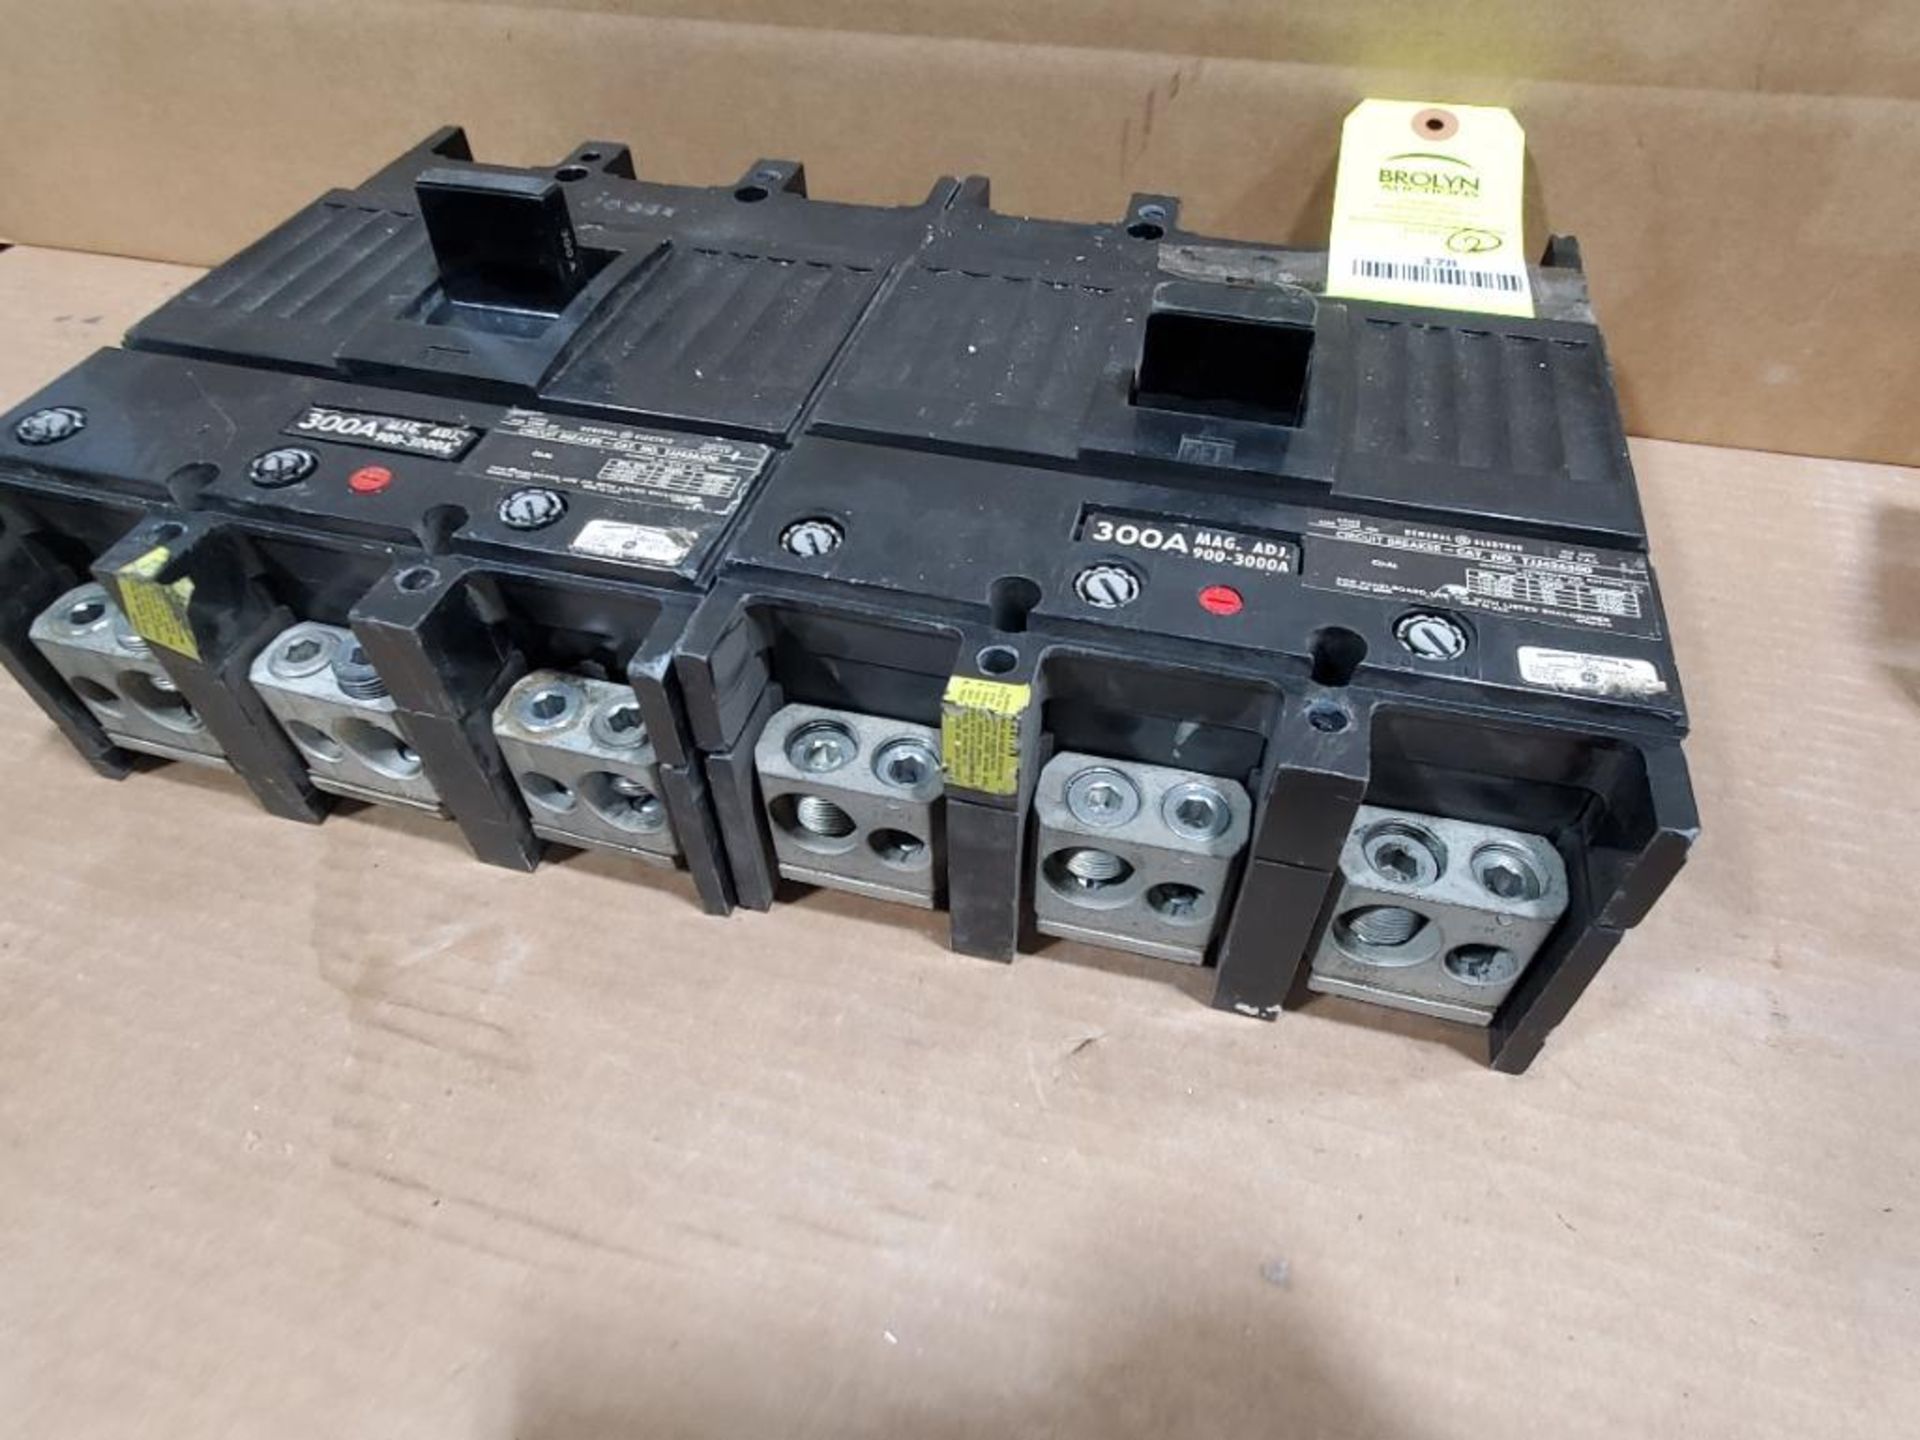 Qty 2 - 300 amp GE molded case breaker. Catalog TJJ436300. - Image 6 of 6